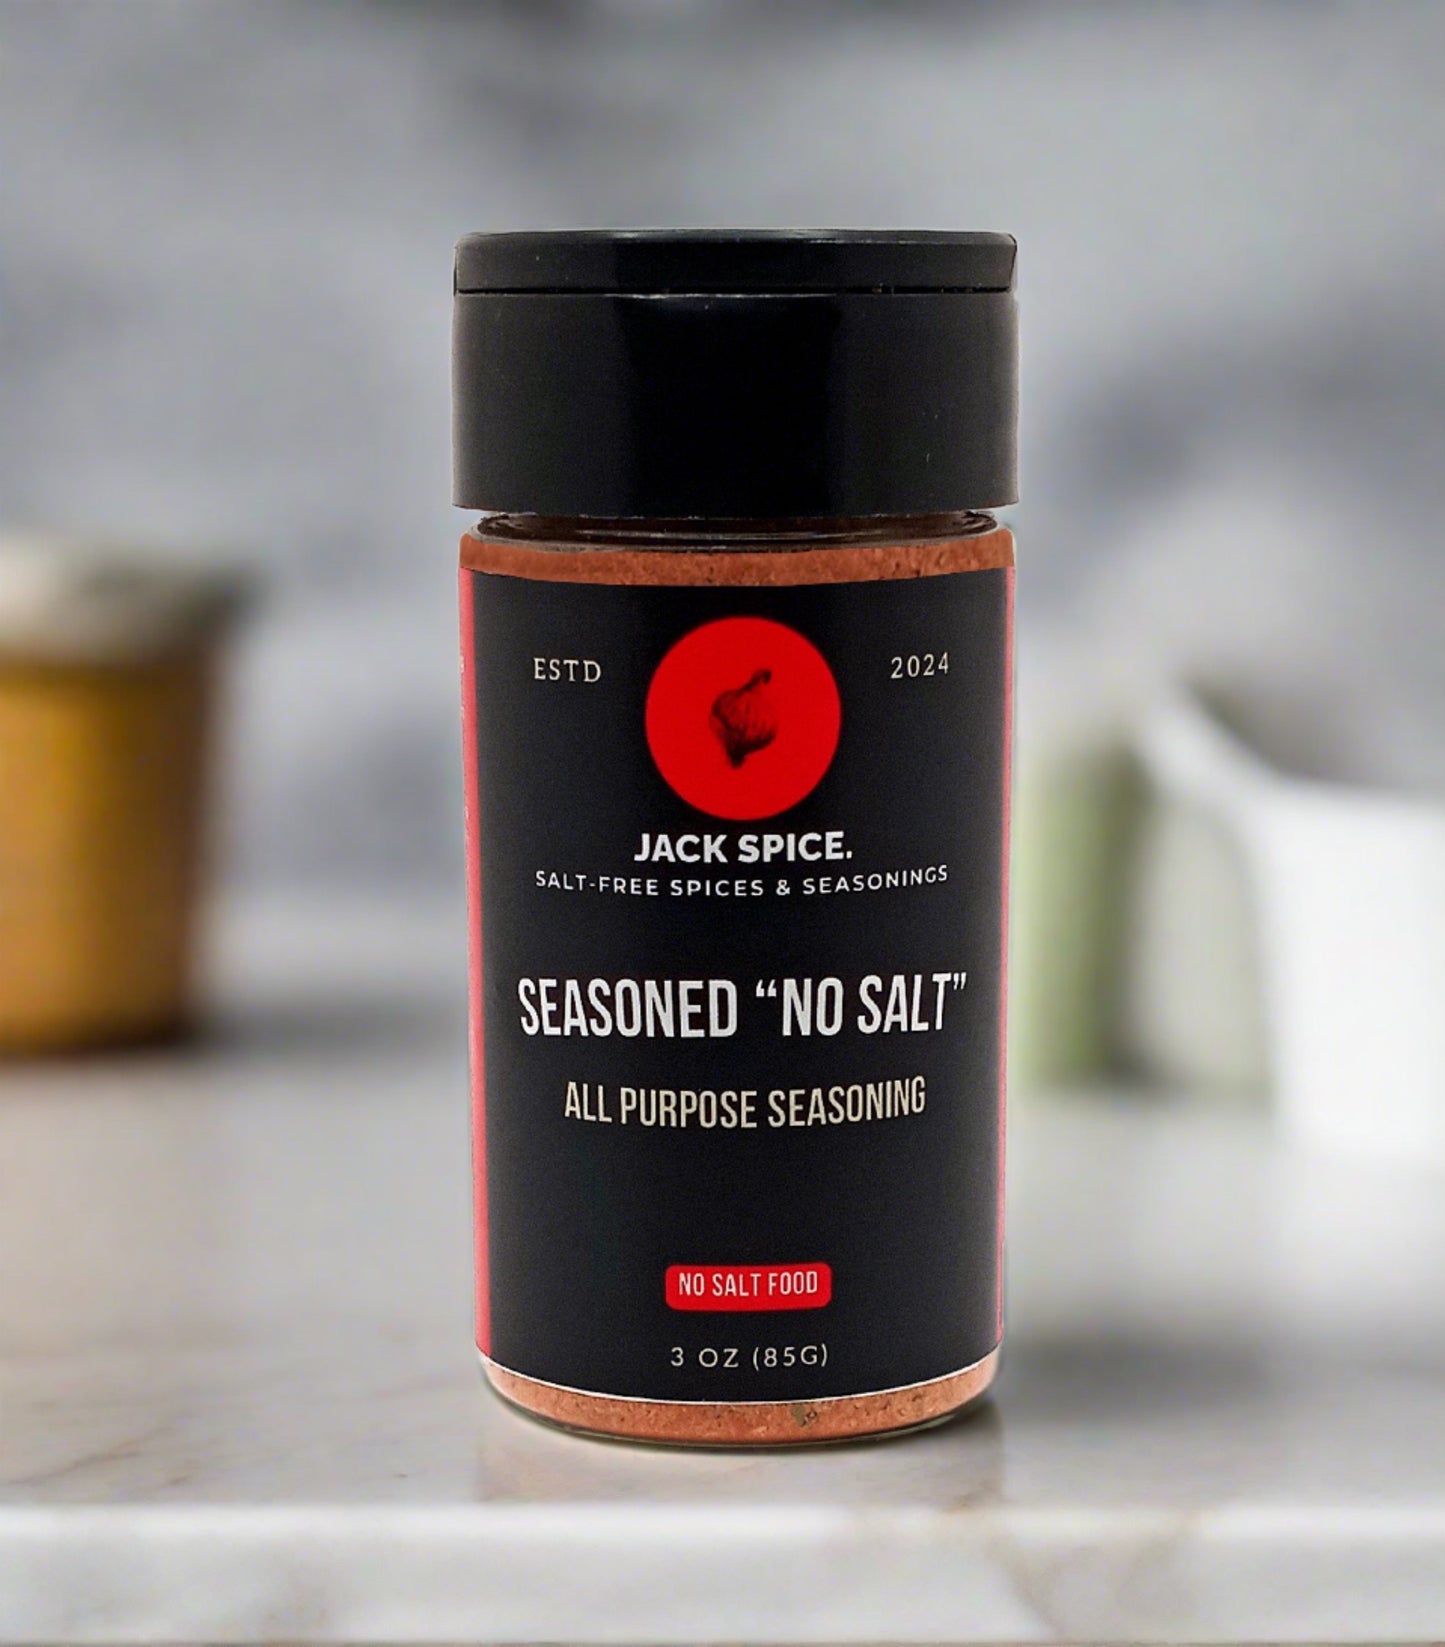 Jack Spice Seasoned "No Salt" All Purpose Seasoning